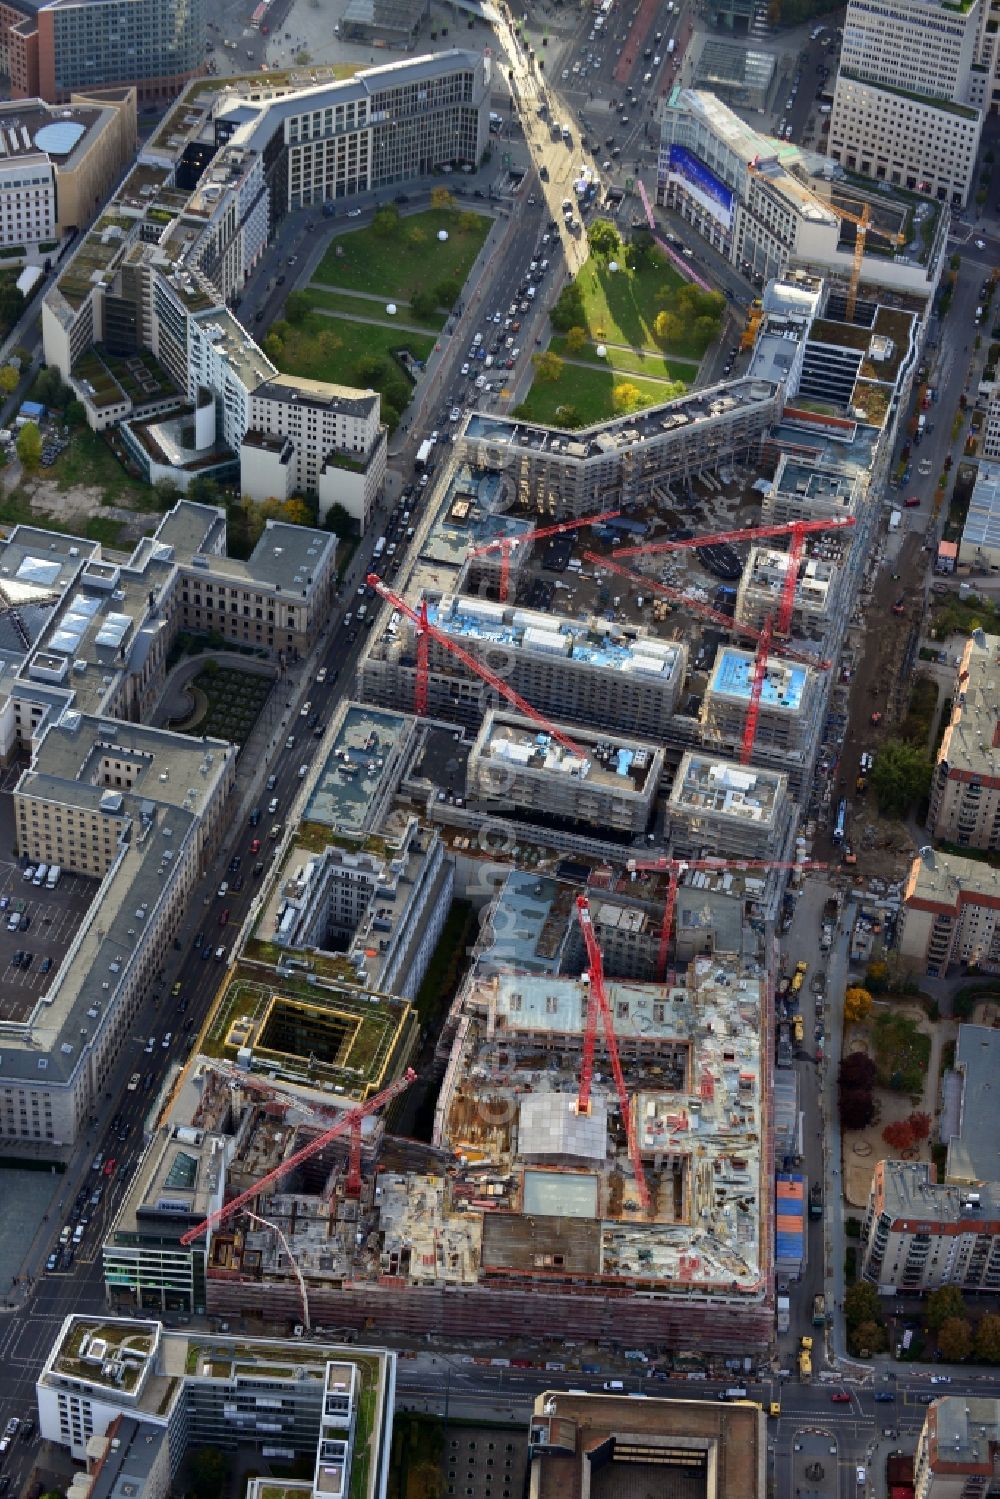 Aerial image Berlin - New building on the site Wertheim at Leipziger Platz 12 in Berlin-Mitte